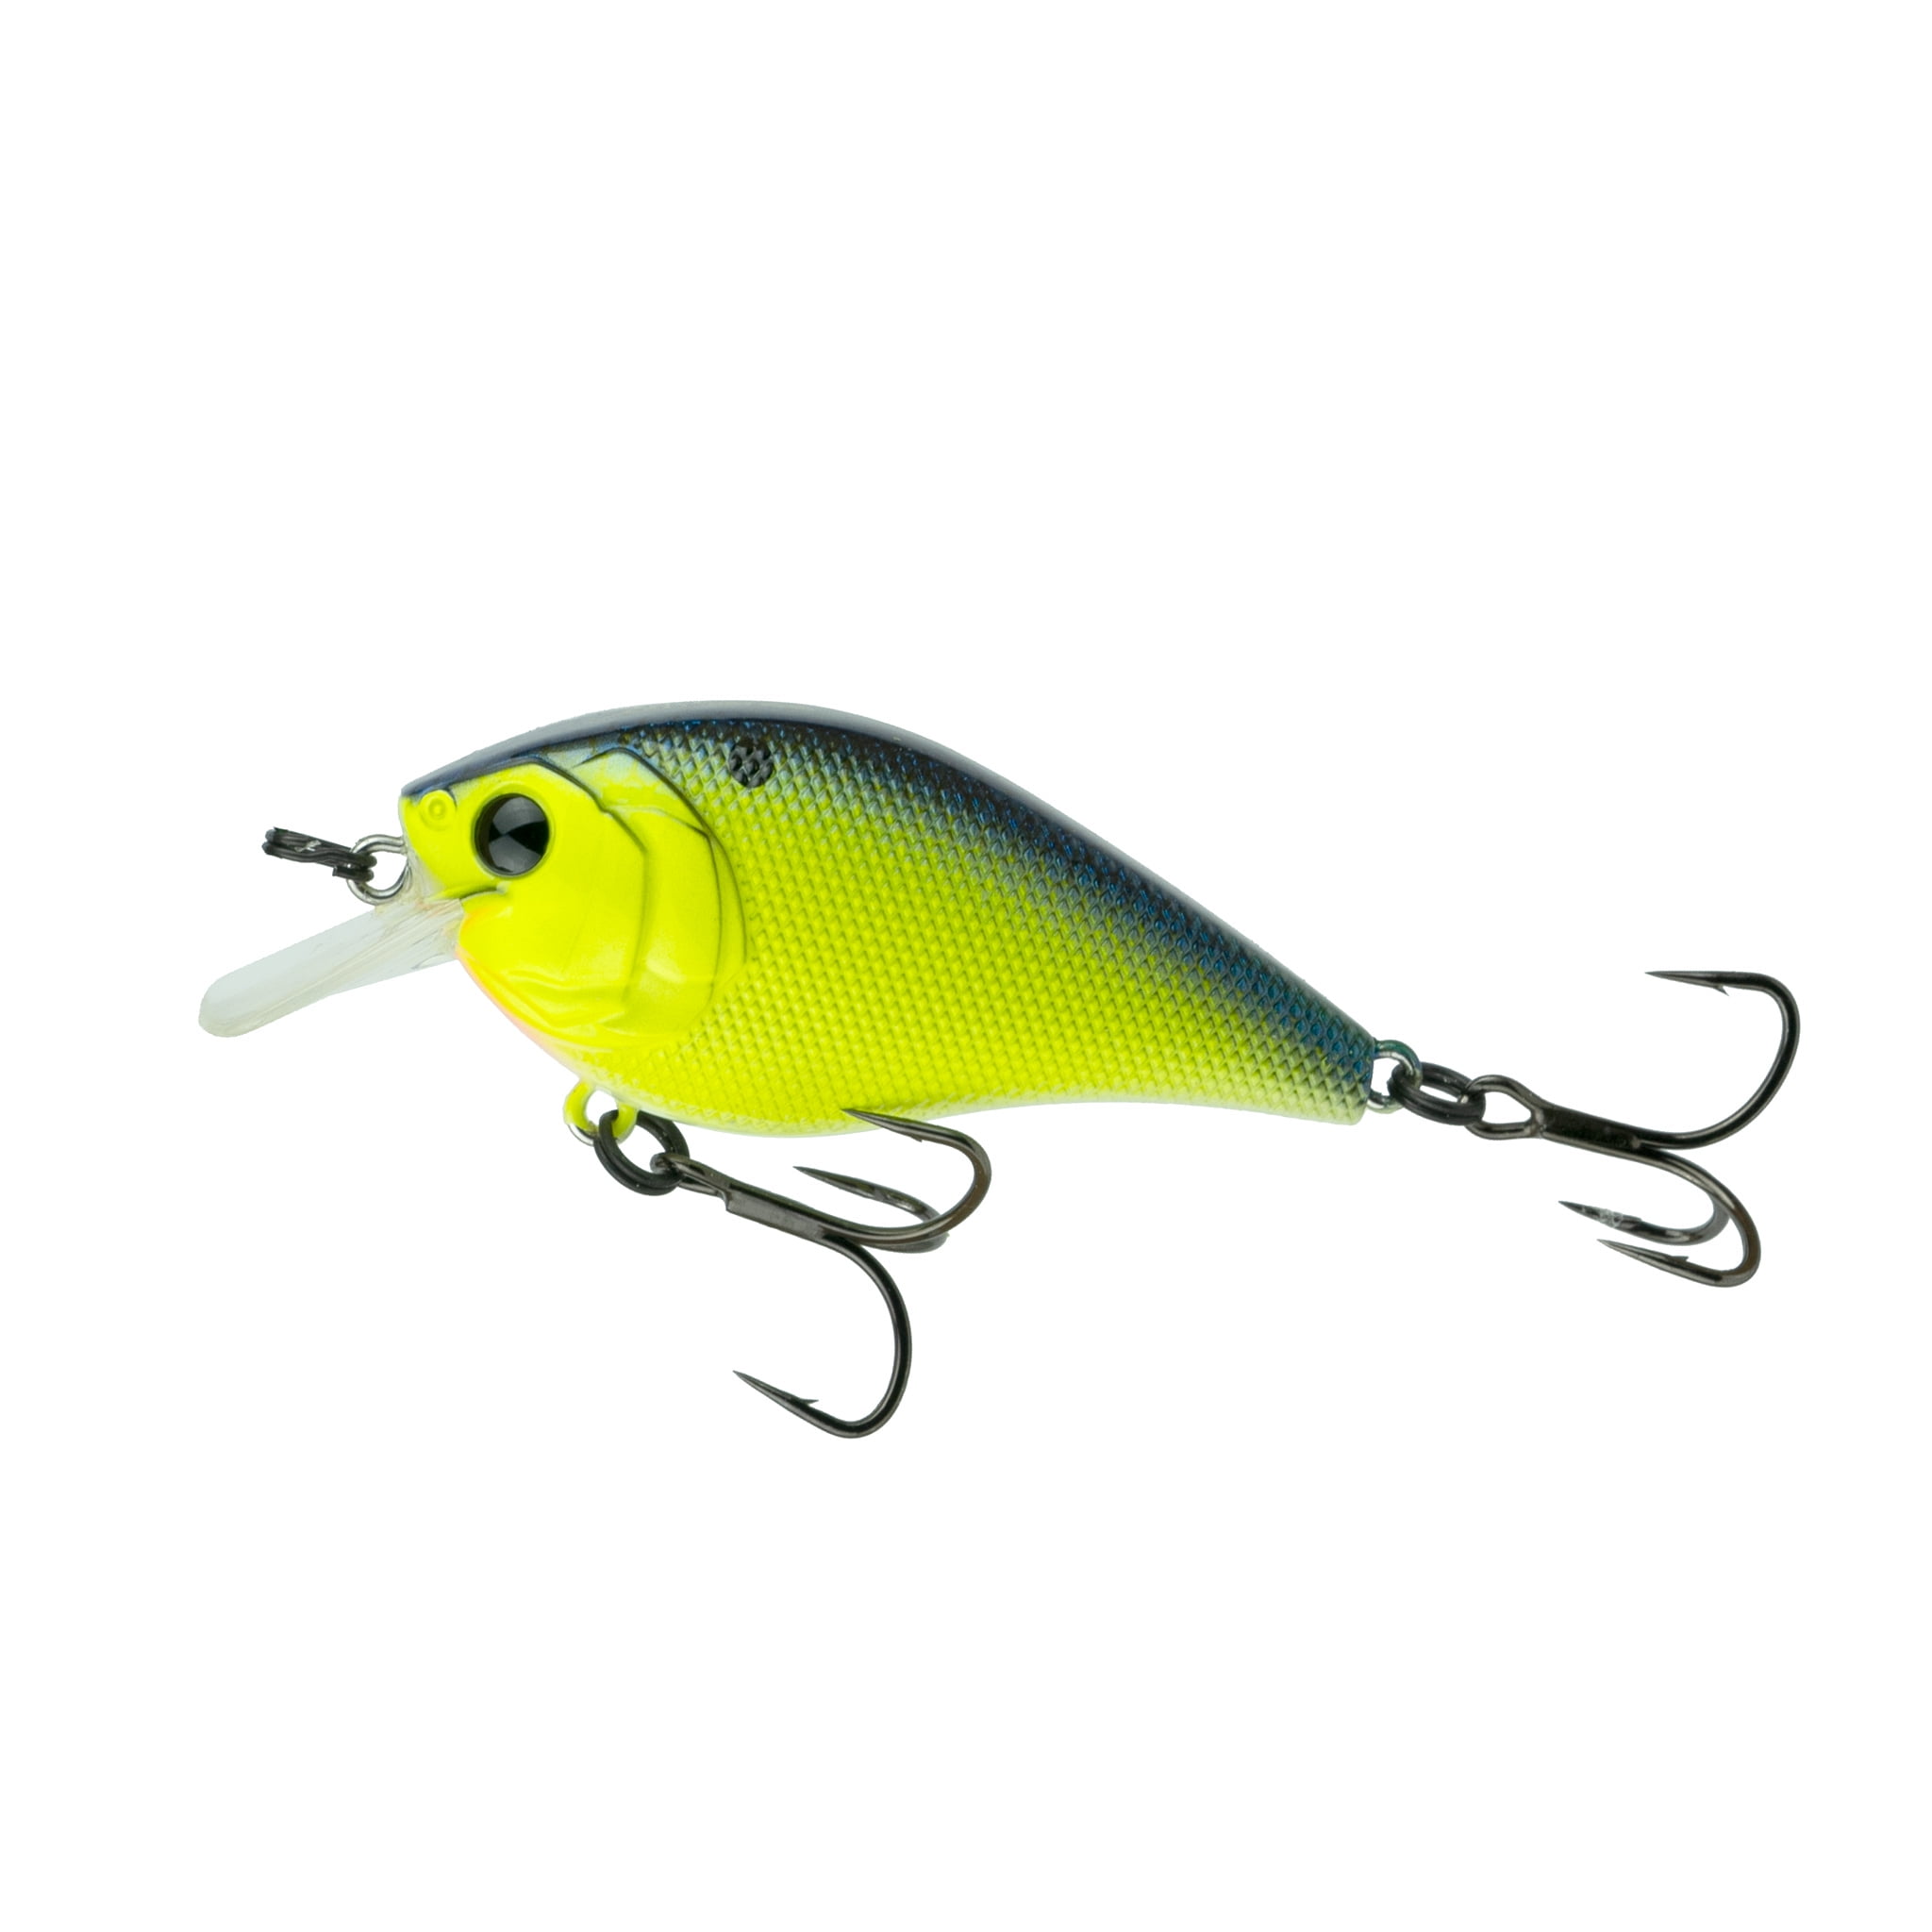 DRT Drt Tiny Crush Transfer Tail All Colors Lure Bass Fishing 